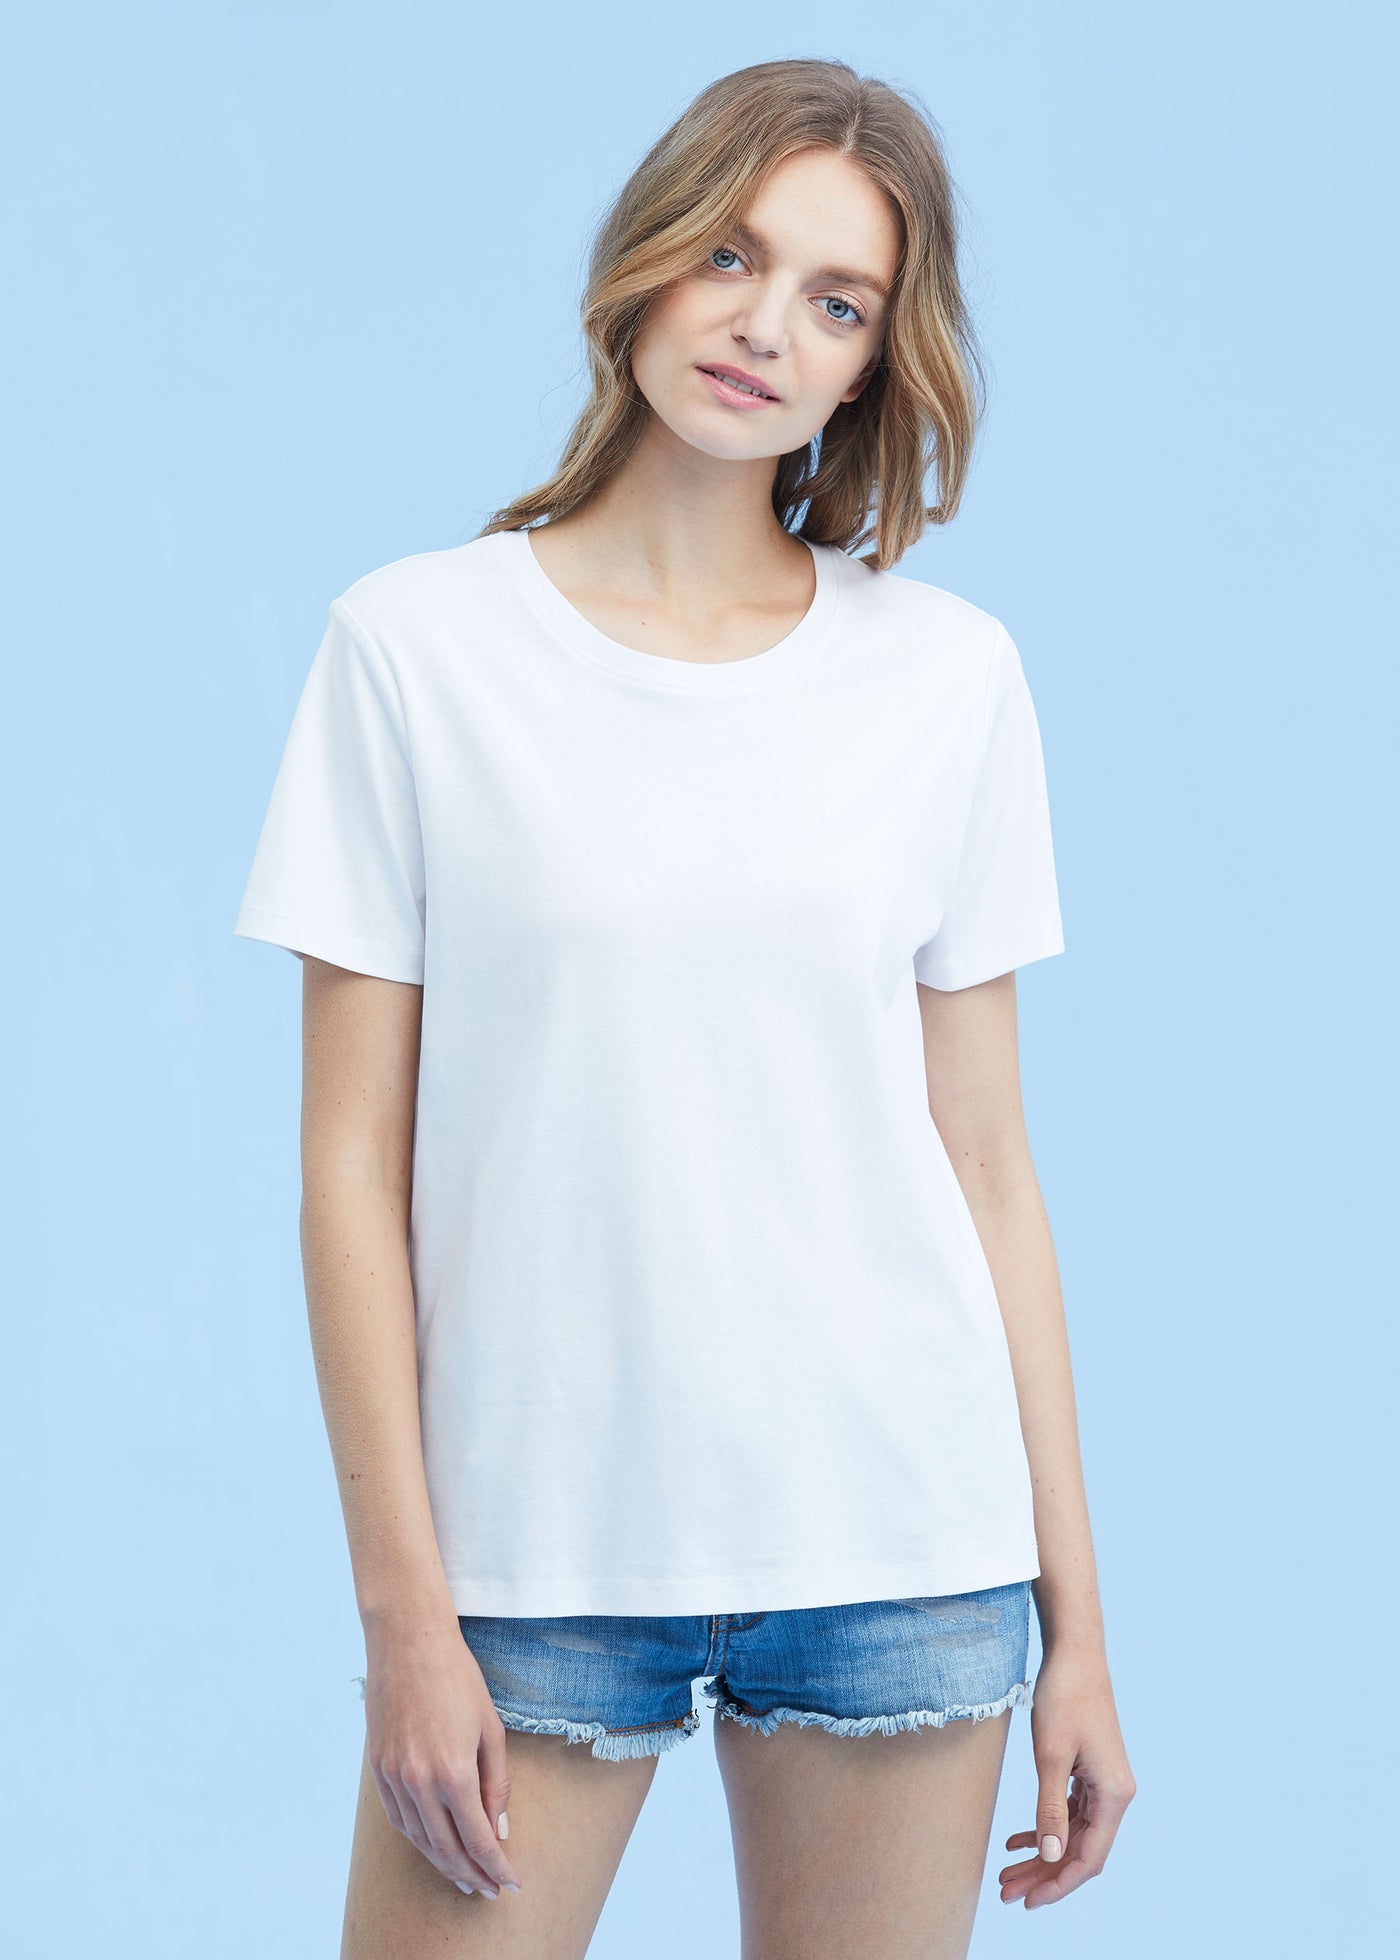 Silk Cotton Blended T Shirt